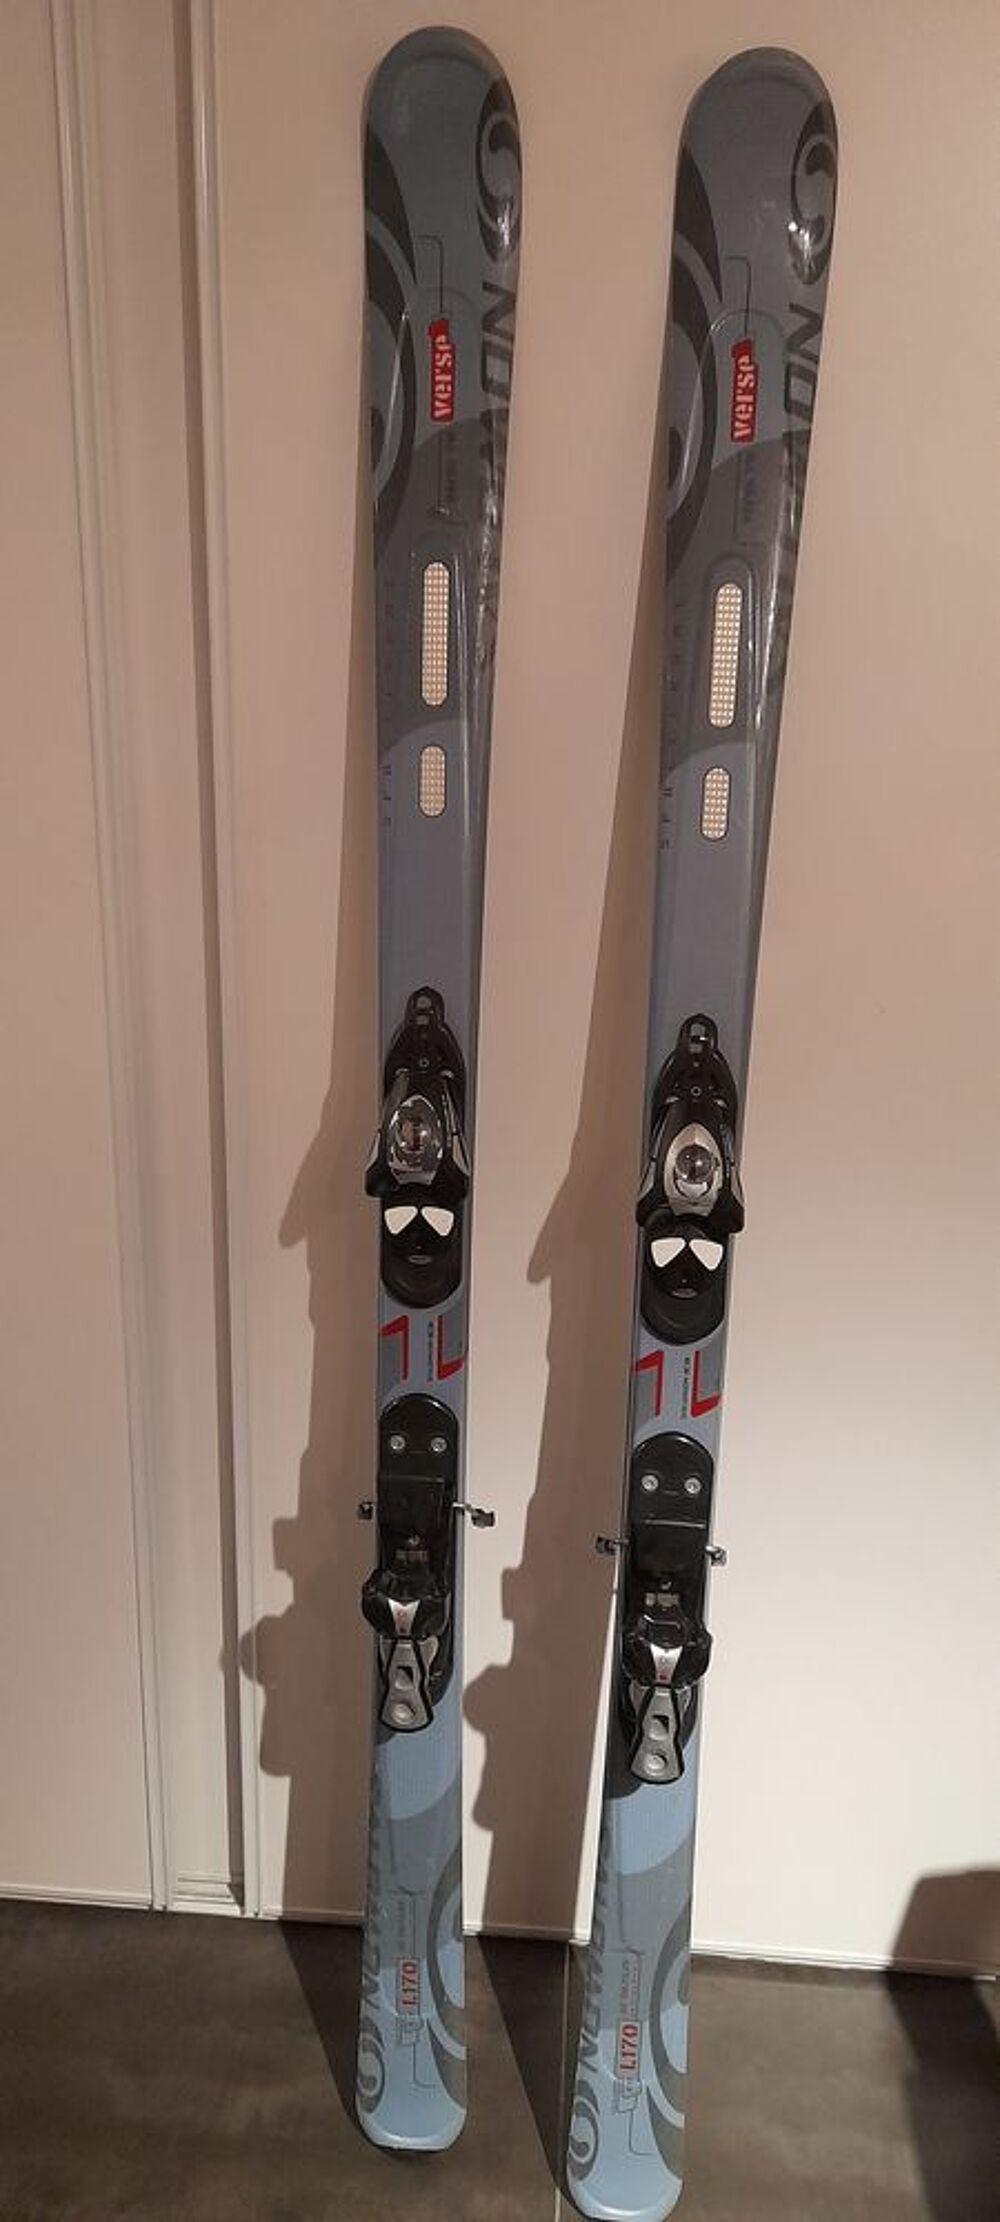 Skis 170cm Salomon spaceframe Sports